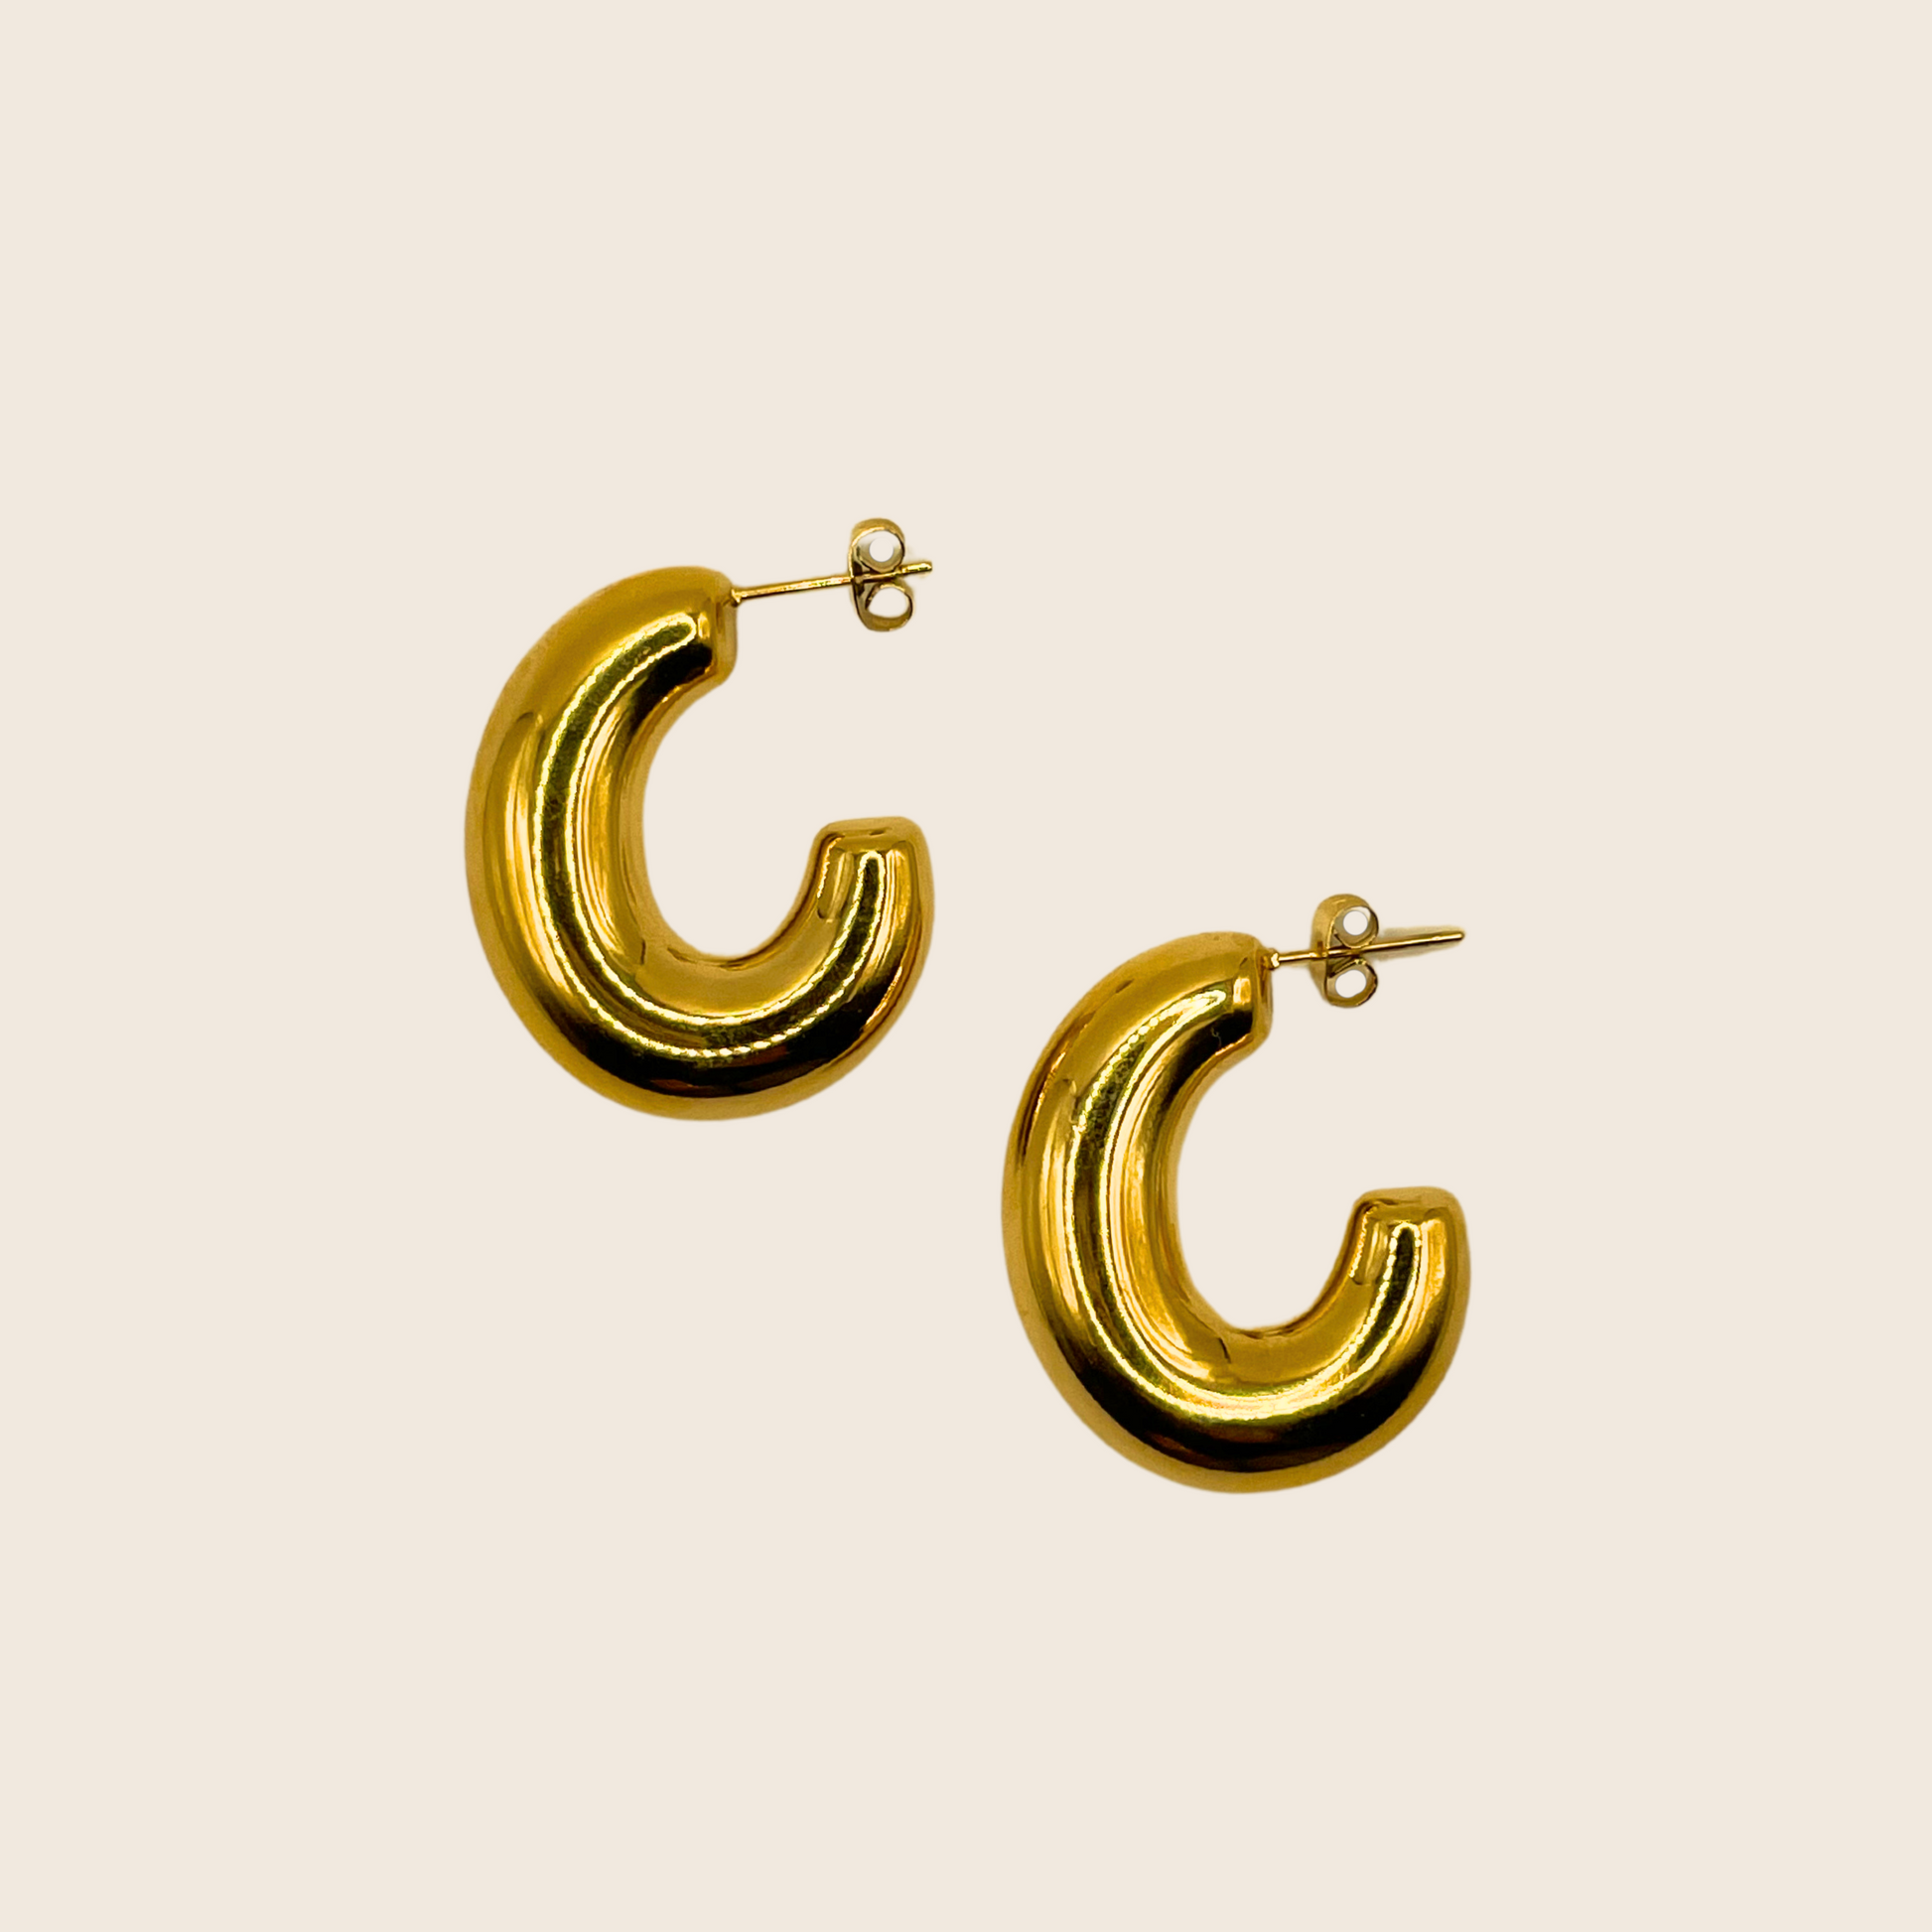 Cee Earrings - Lemon Lua Cee Earrings Lemon Lua Lemon Lua Cee Earrings Cee Earrings